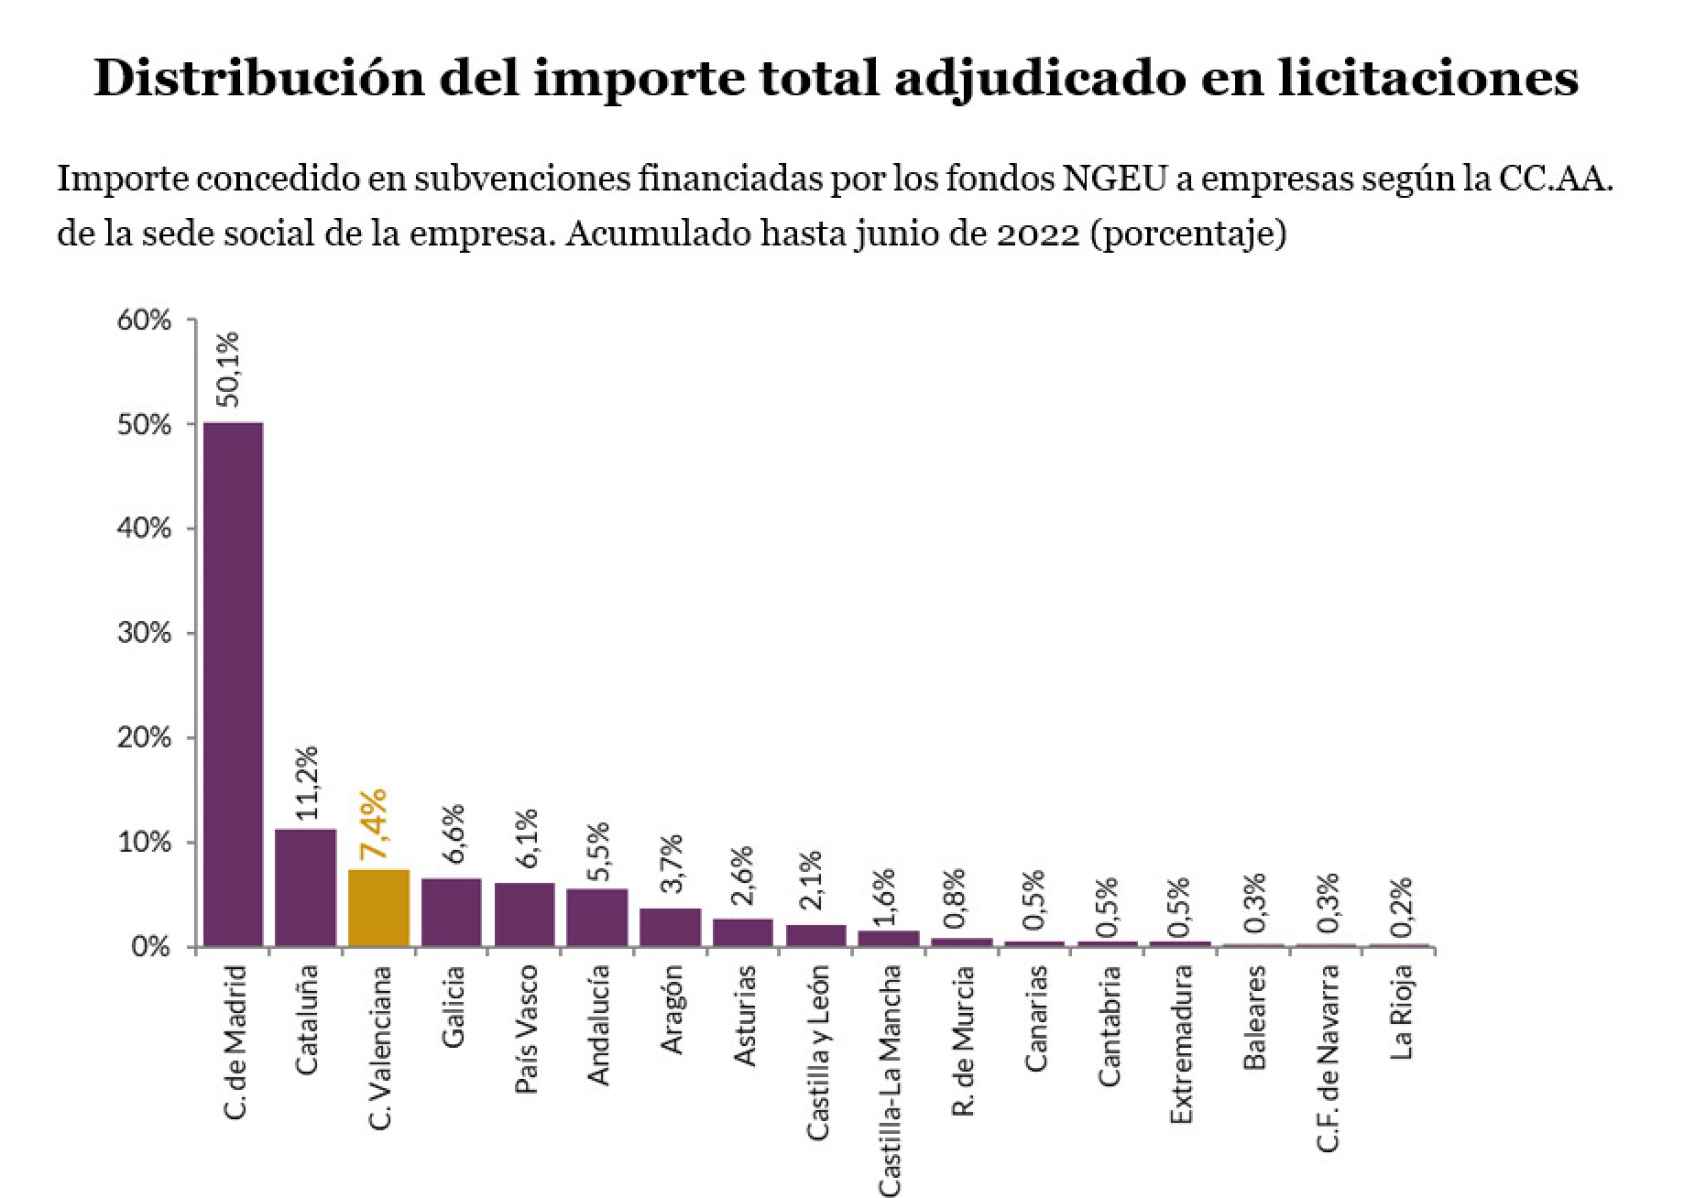 Fuente: Maudos, Mollá y Pérez (2022). “Evaluación de la participación de las empresas valencianas en los fondos de recuperación”, IvieLab.